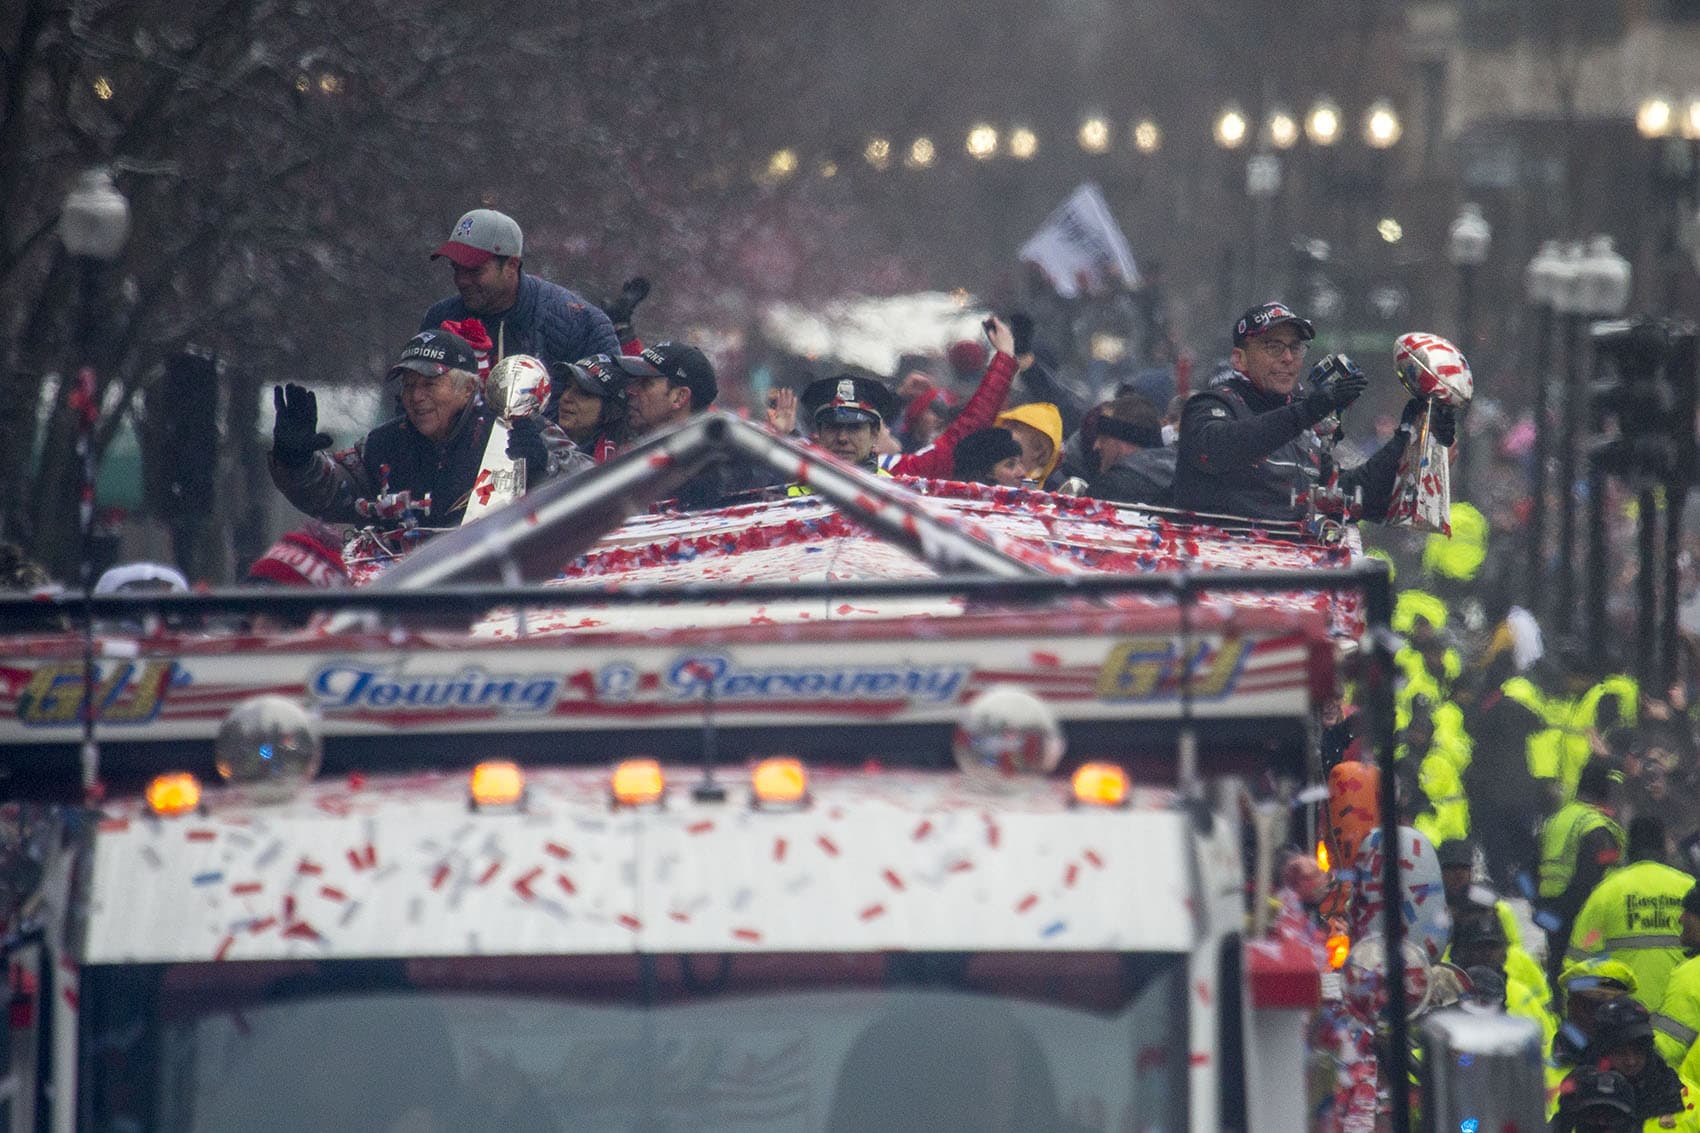 New England Patriots Super Bowl Parade Draws Thousands